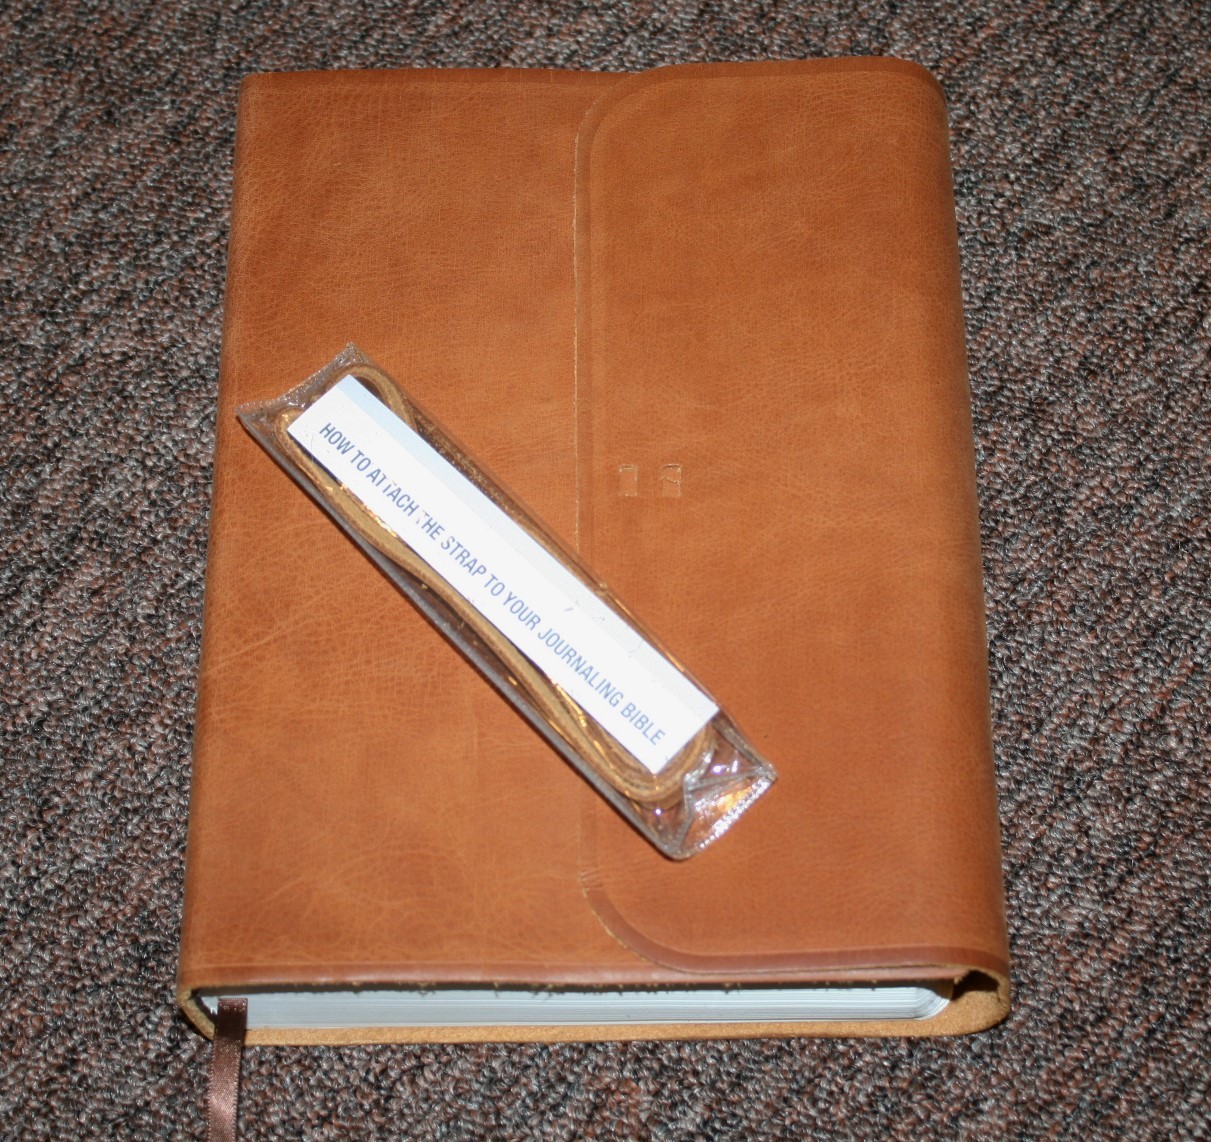 esv-single-column-journaling-bible-large-print-edition-11-bible